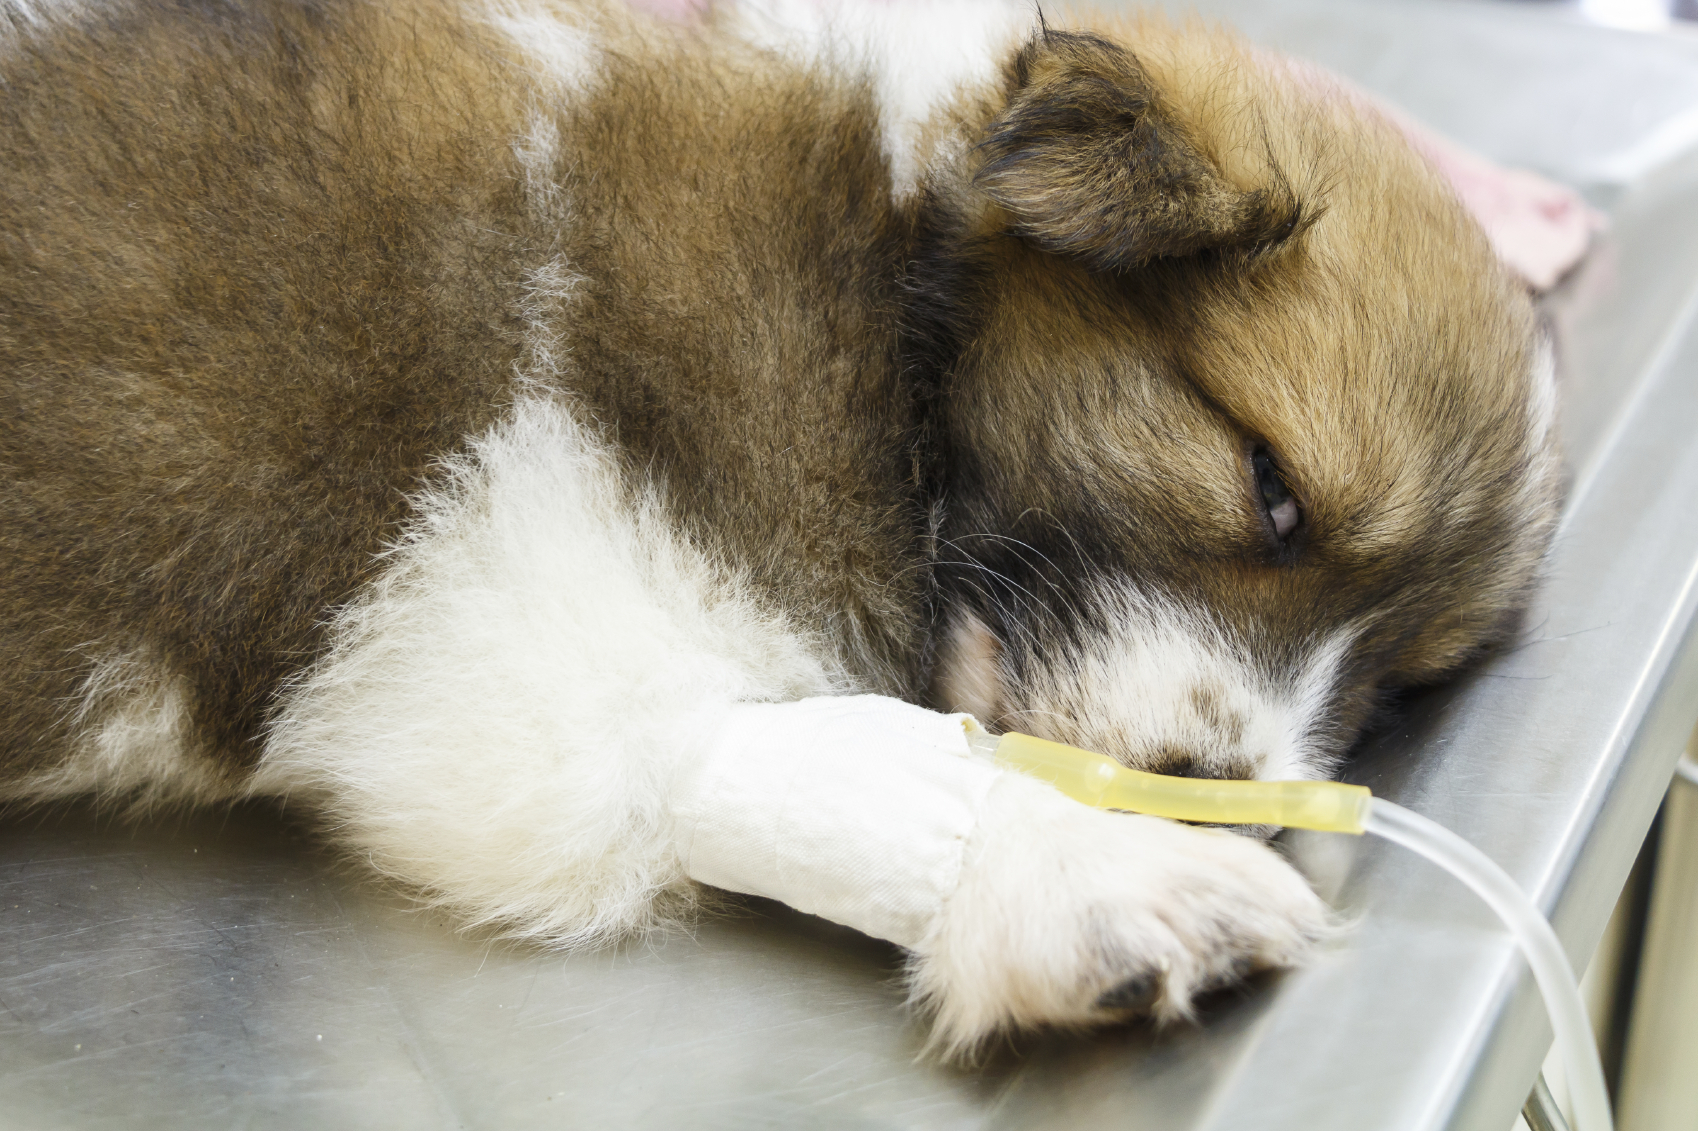 แจกวิธีการดูแลน้องหมาป่วยโรคไวรัสลำไส้อักเสบติดต่อ | Dogilike.com